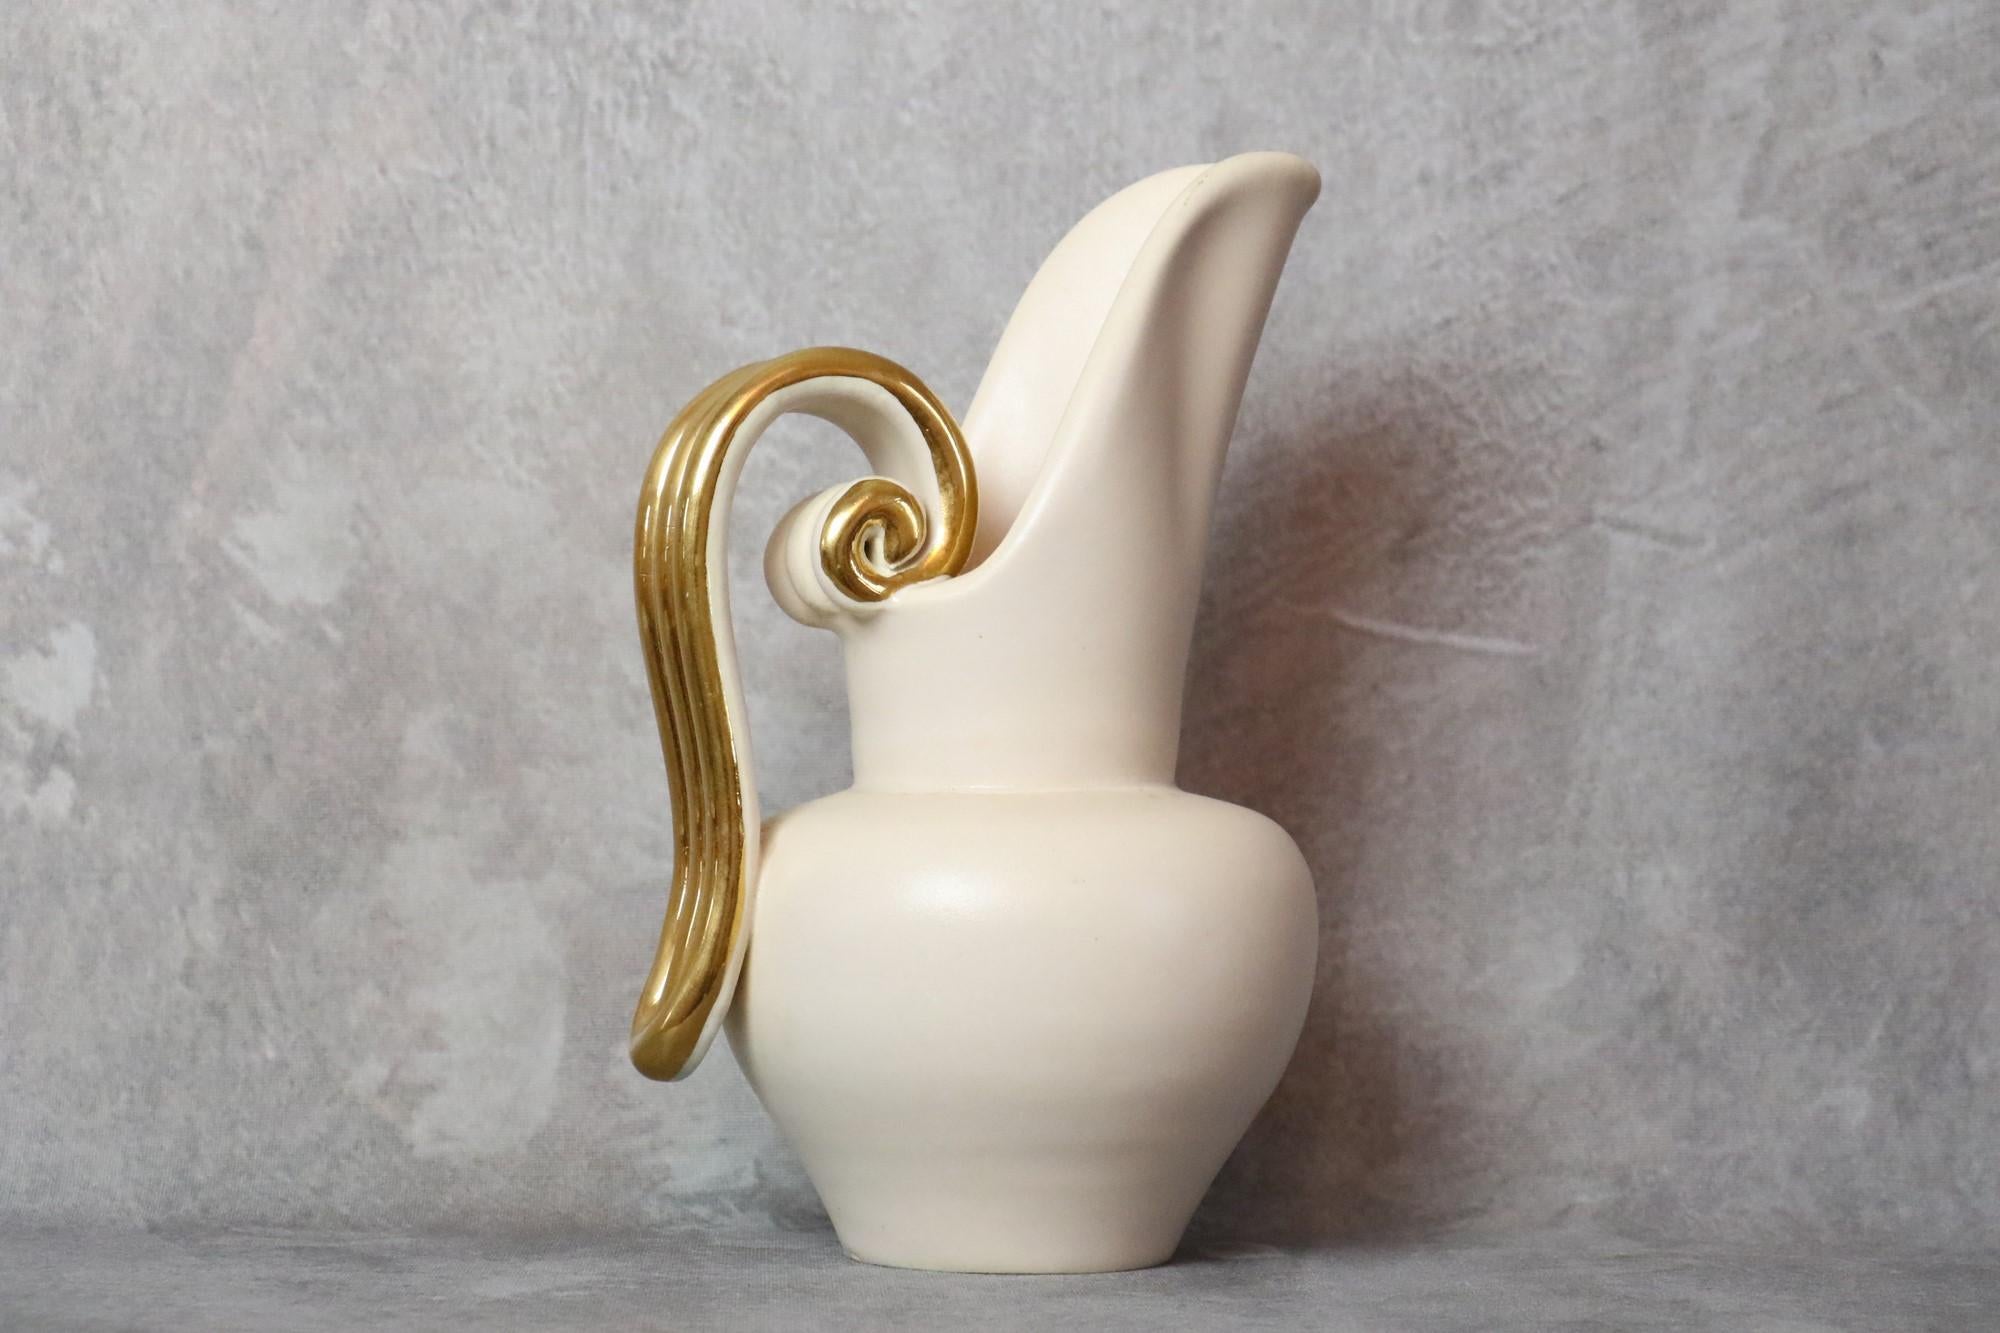 Louis Giraud Pichet en céramique blanc et or du milieu du siècle, Vallauris, 1960

Il s'agit d'une très belle pièce, élégante et délicate. L'émail est très doux, il y a un beau contraste entre le fond blanc laiteux et la poignée dorée.

Sur la